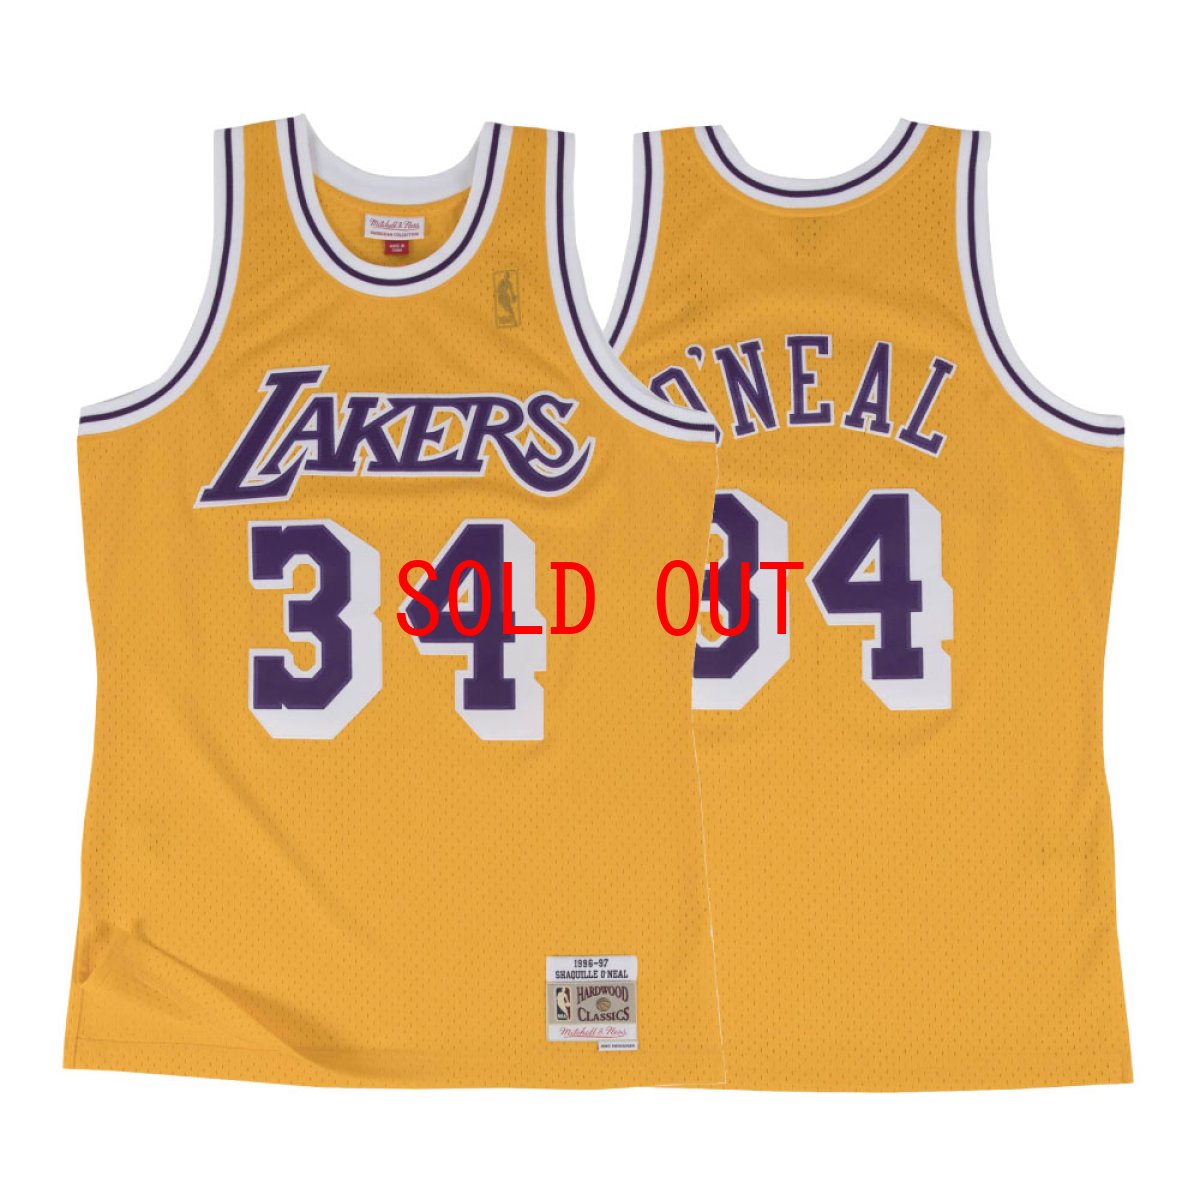 画像1: Los Angeles Lakers NBA Swingman Home Jersey 96-97 シャキール オニール レイカーズ スイングマン ジャージ バスケットボール ゲーム シャツ (1)